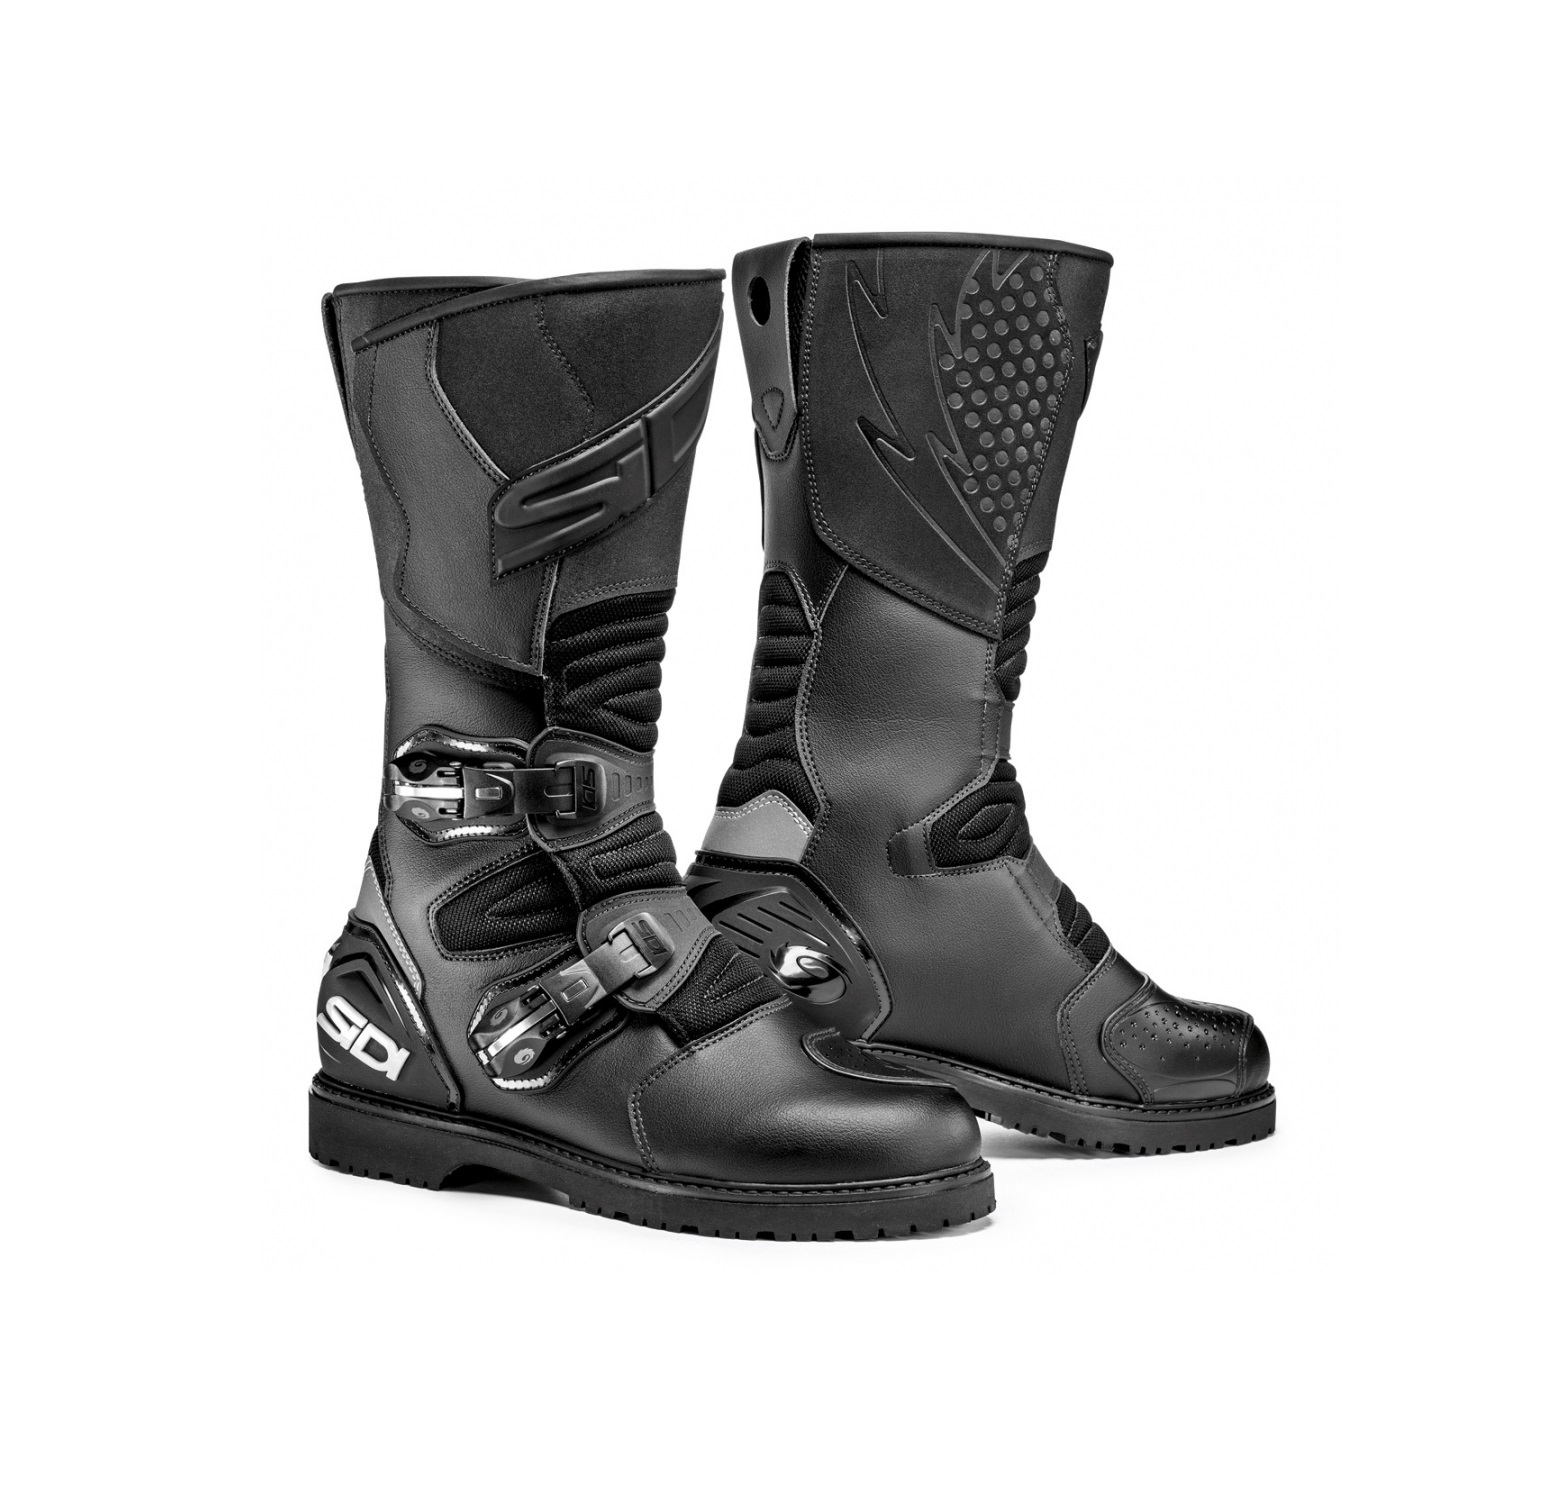 Sidi Deep Rain Touring ADV boots - better strength, softer texture & light